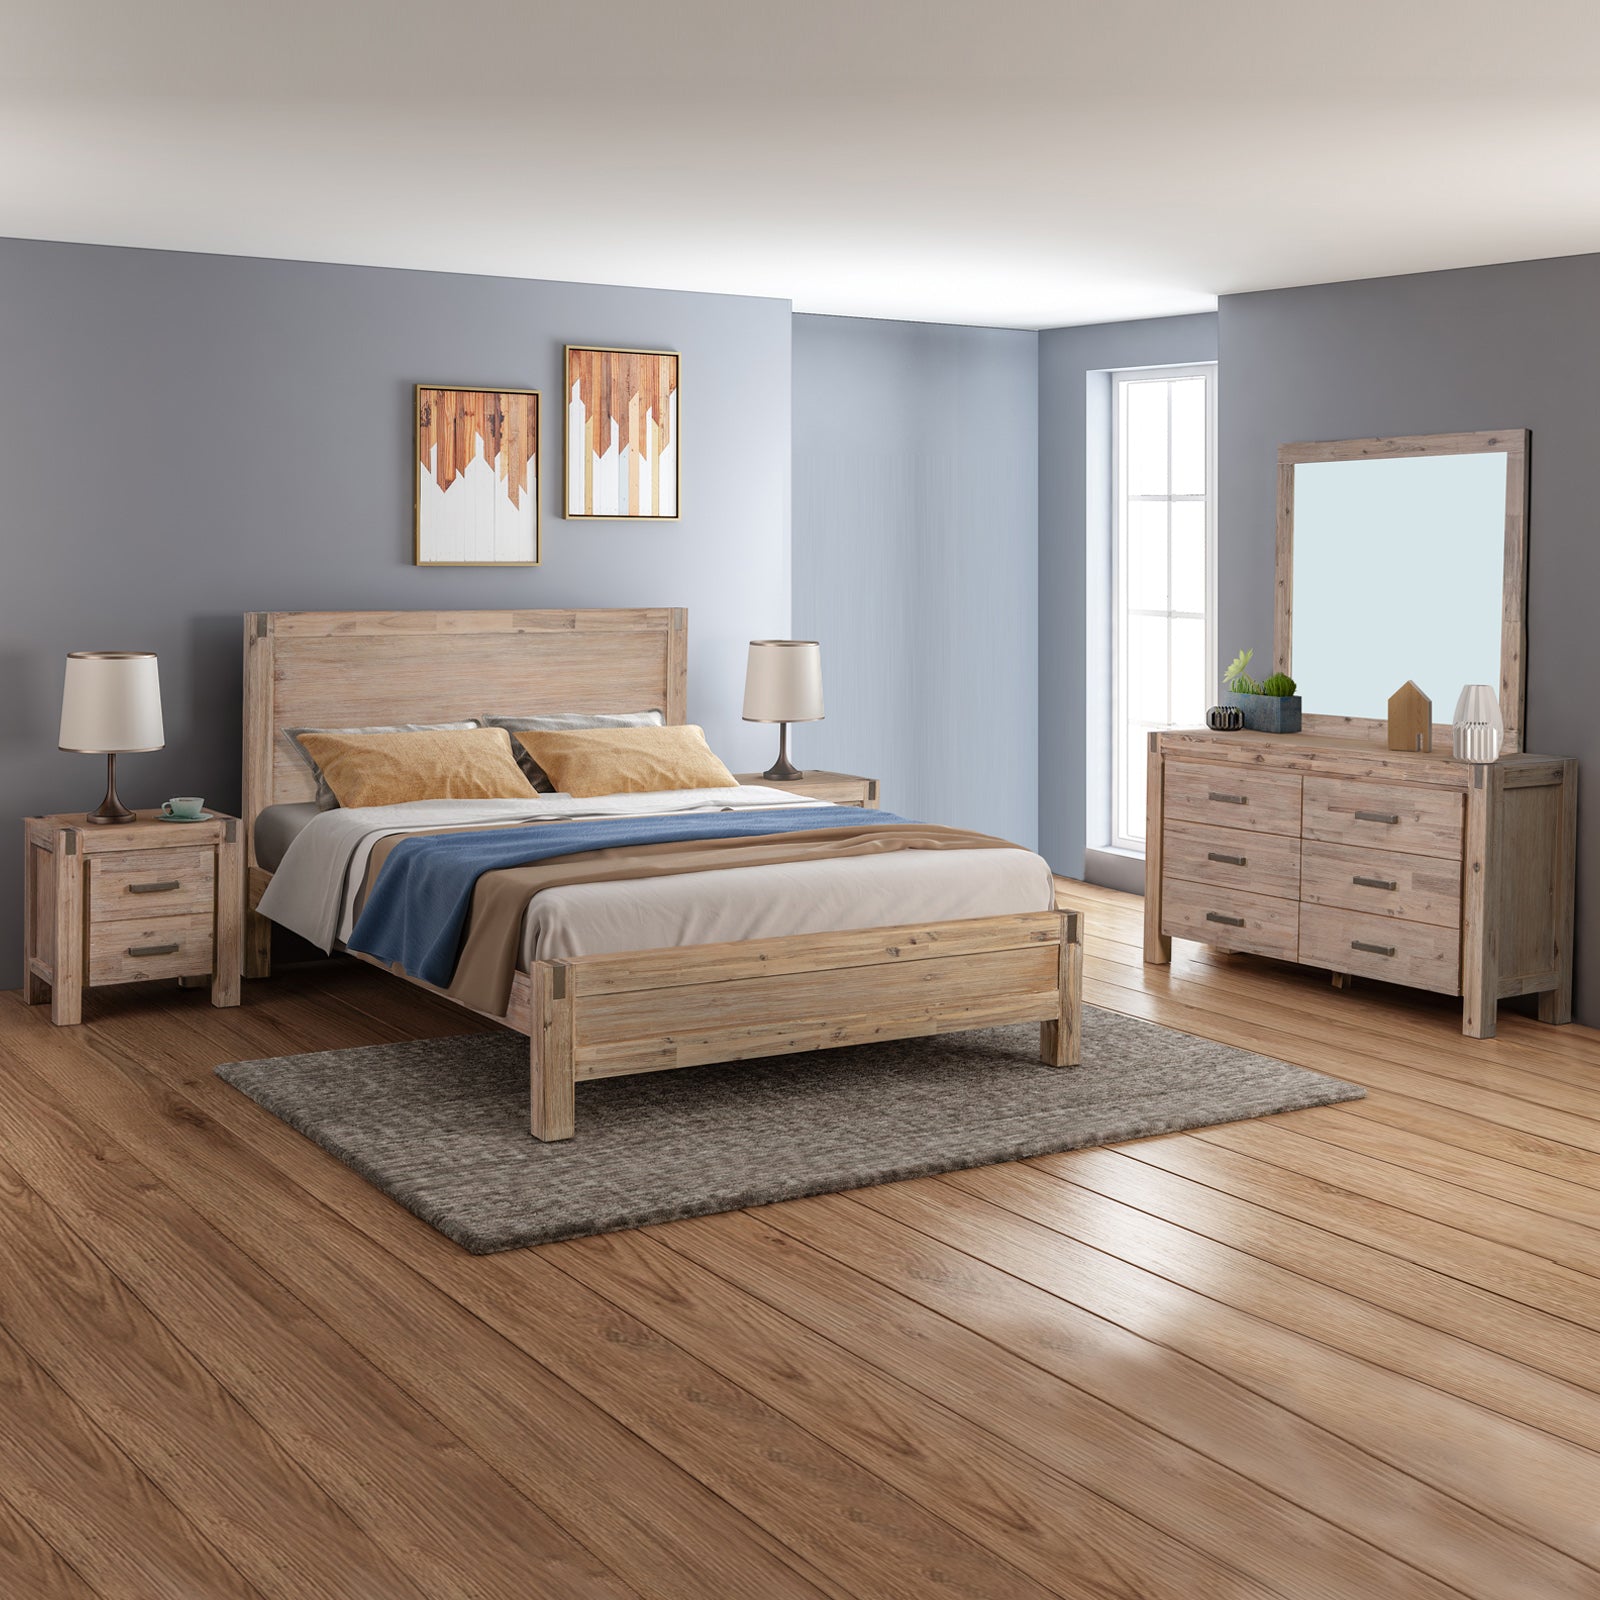 4 Pieces Queen Size Bedroom Suite in Solid Wood